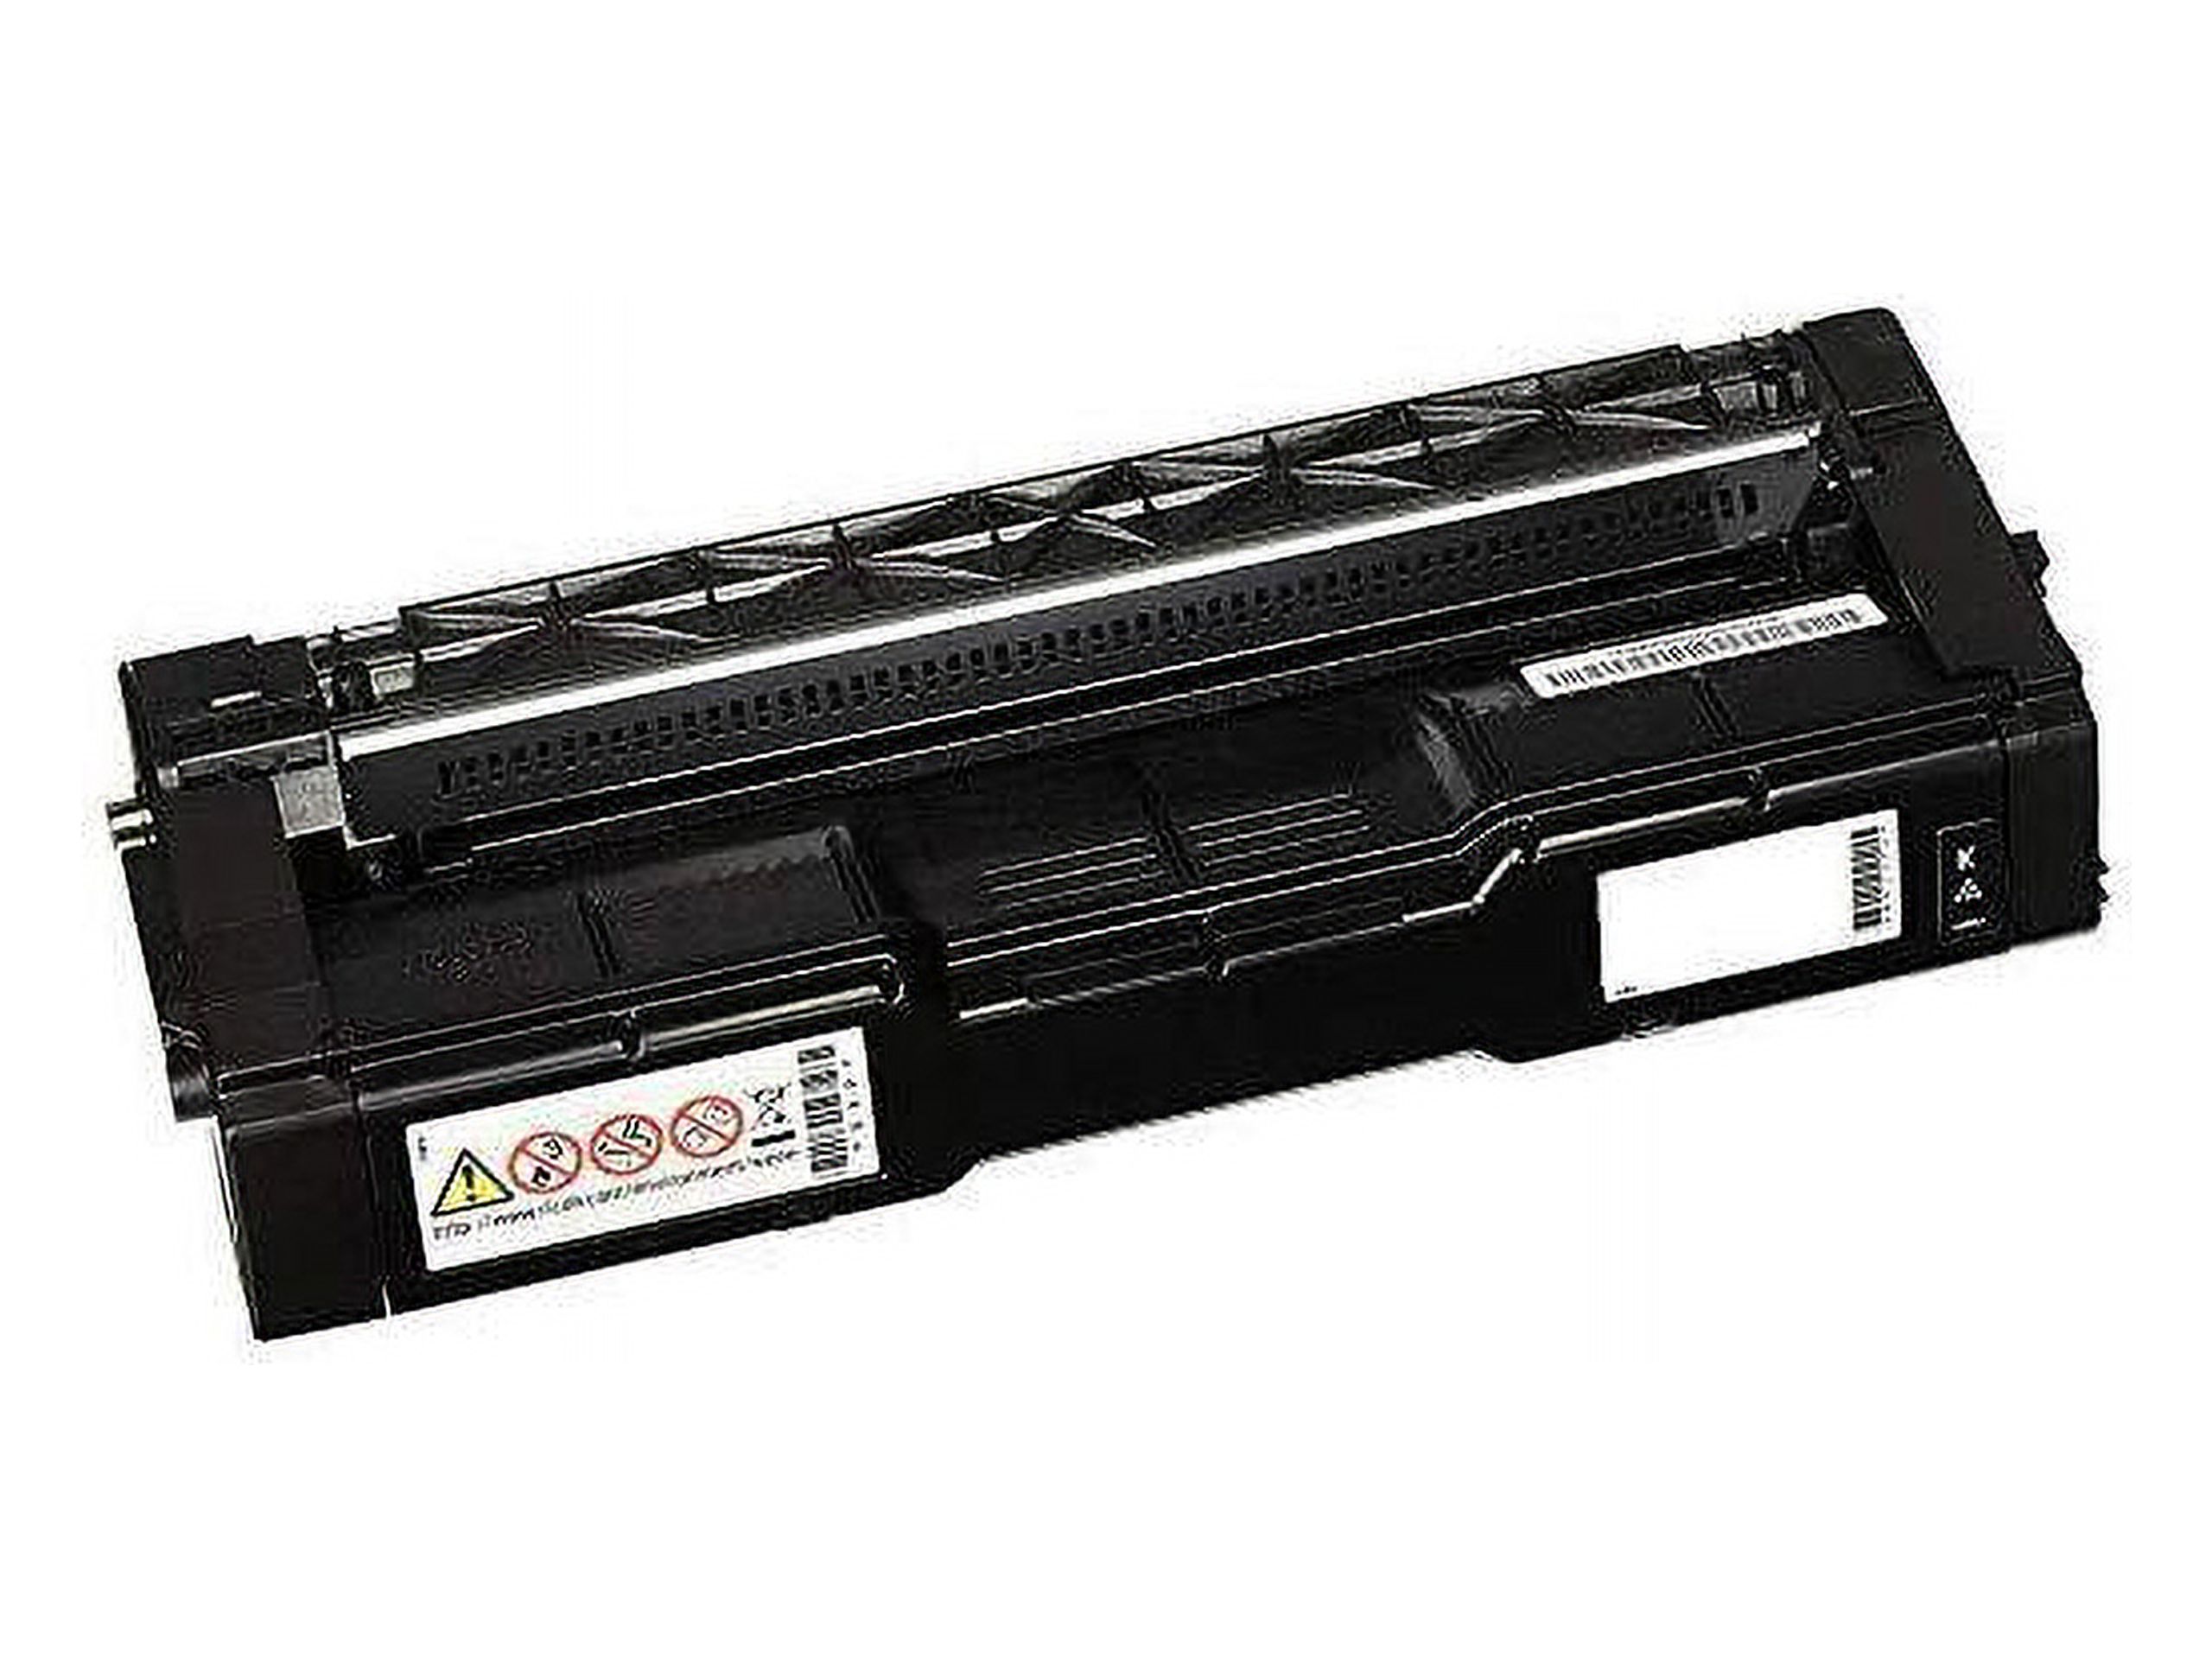 Ricoh Original Laser Toner Cartridge Magenta Pack 408312 - image 2 of 6